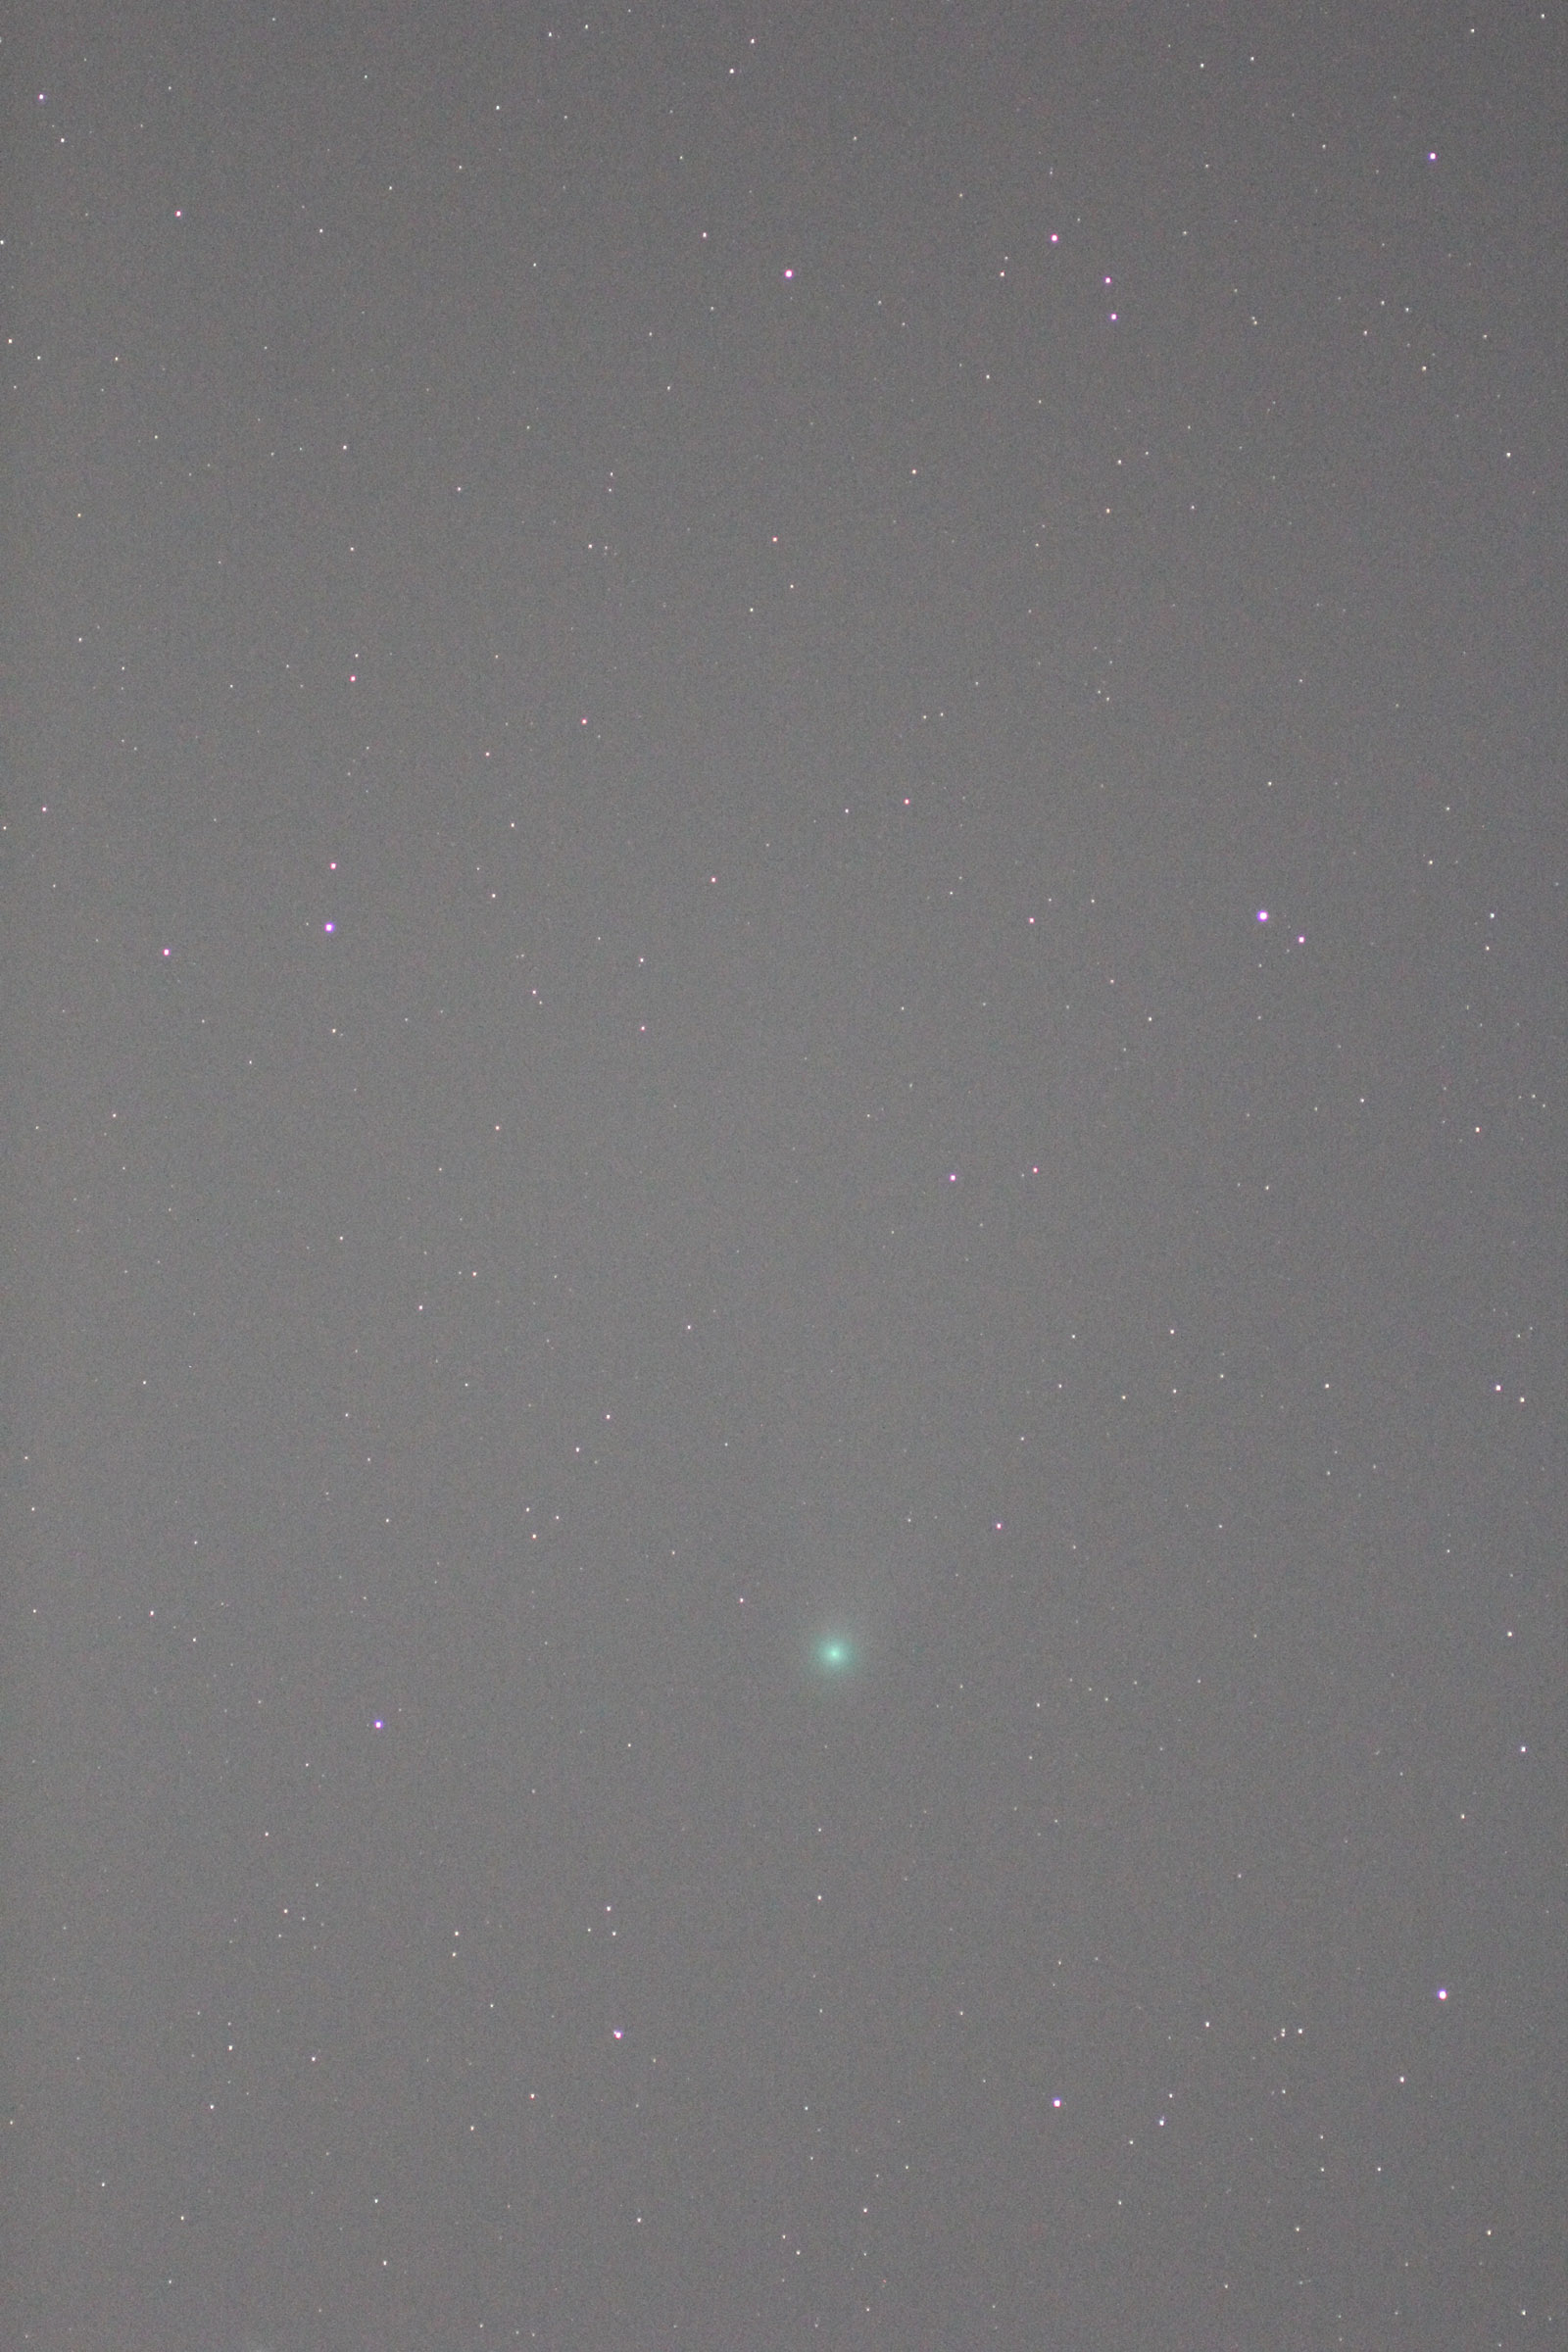 『C/2020 F3 ネオワイズ彗星(3)』(2020年8月13日)